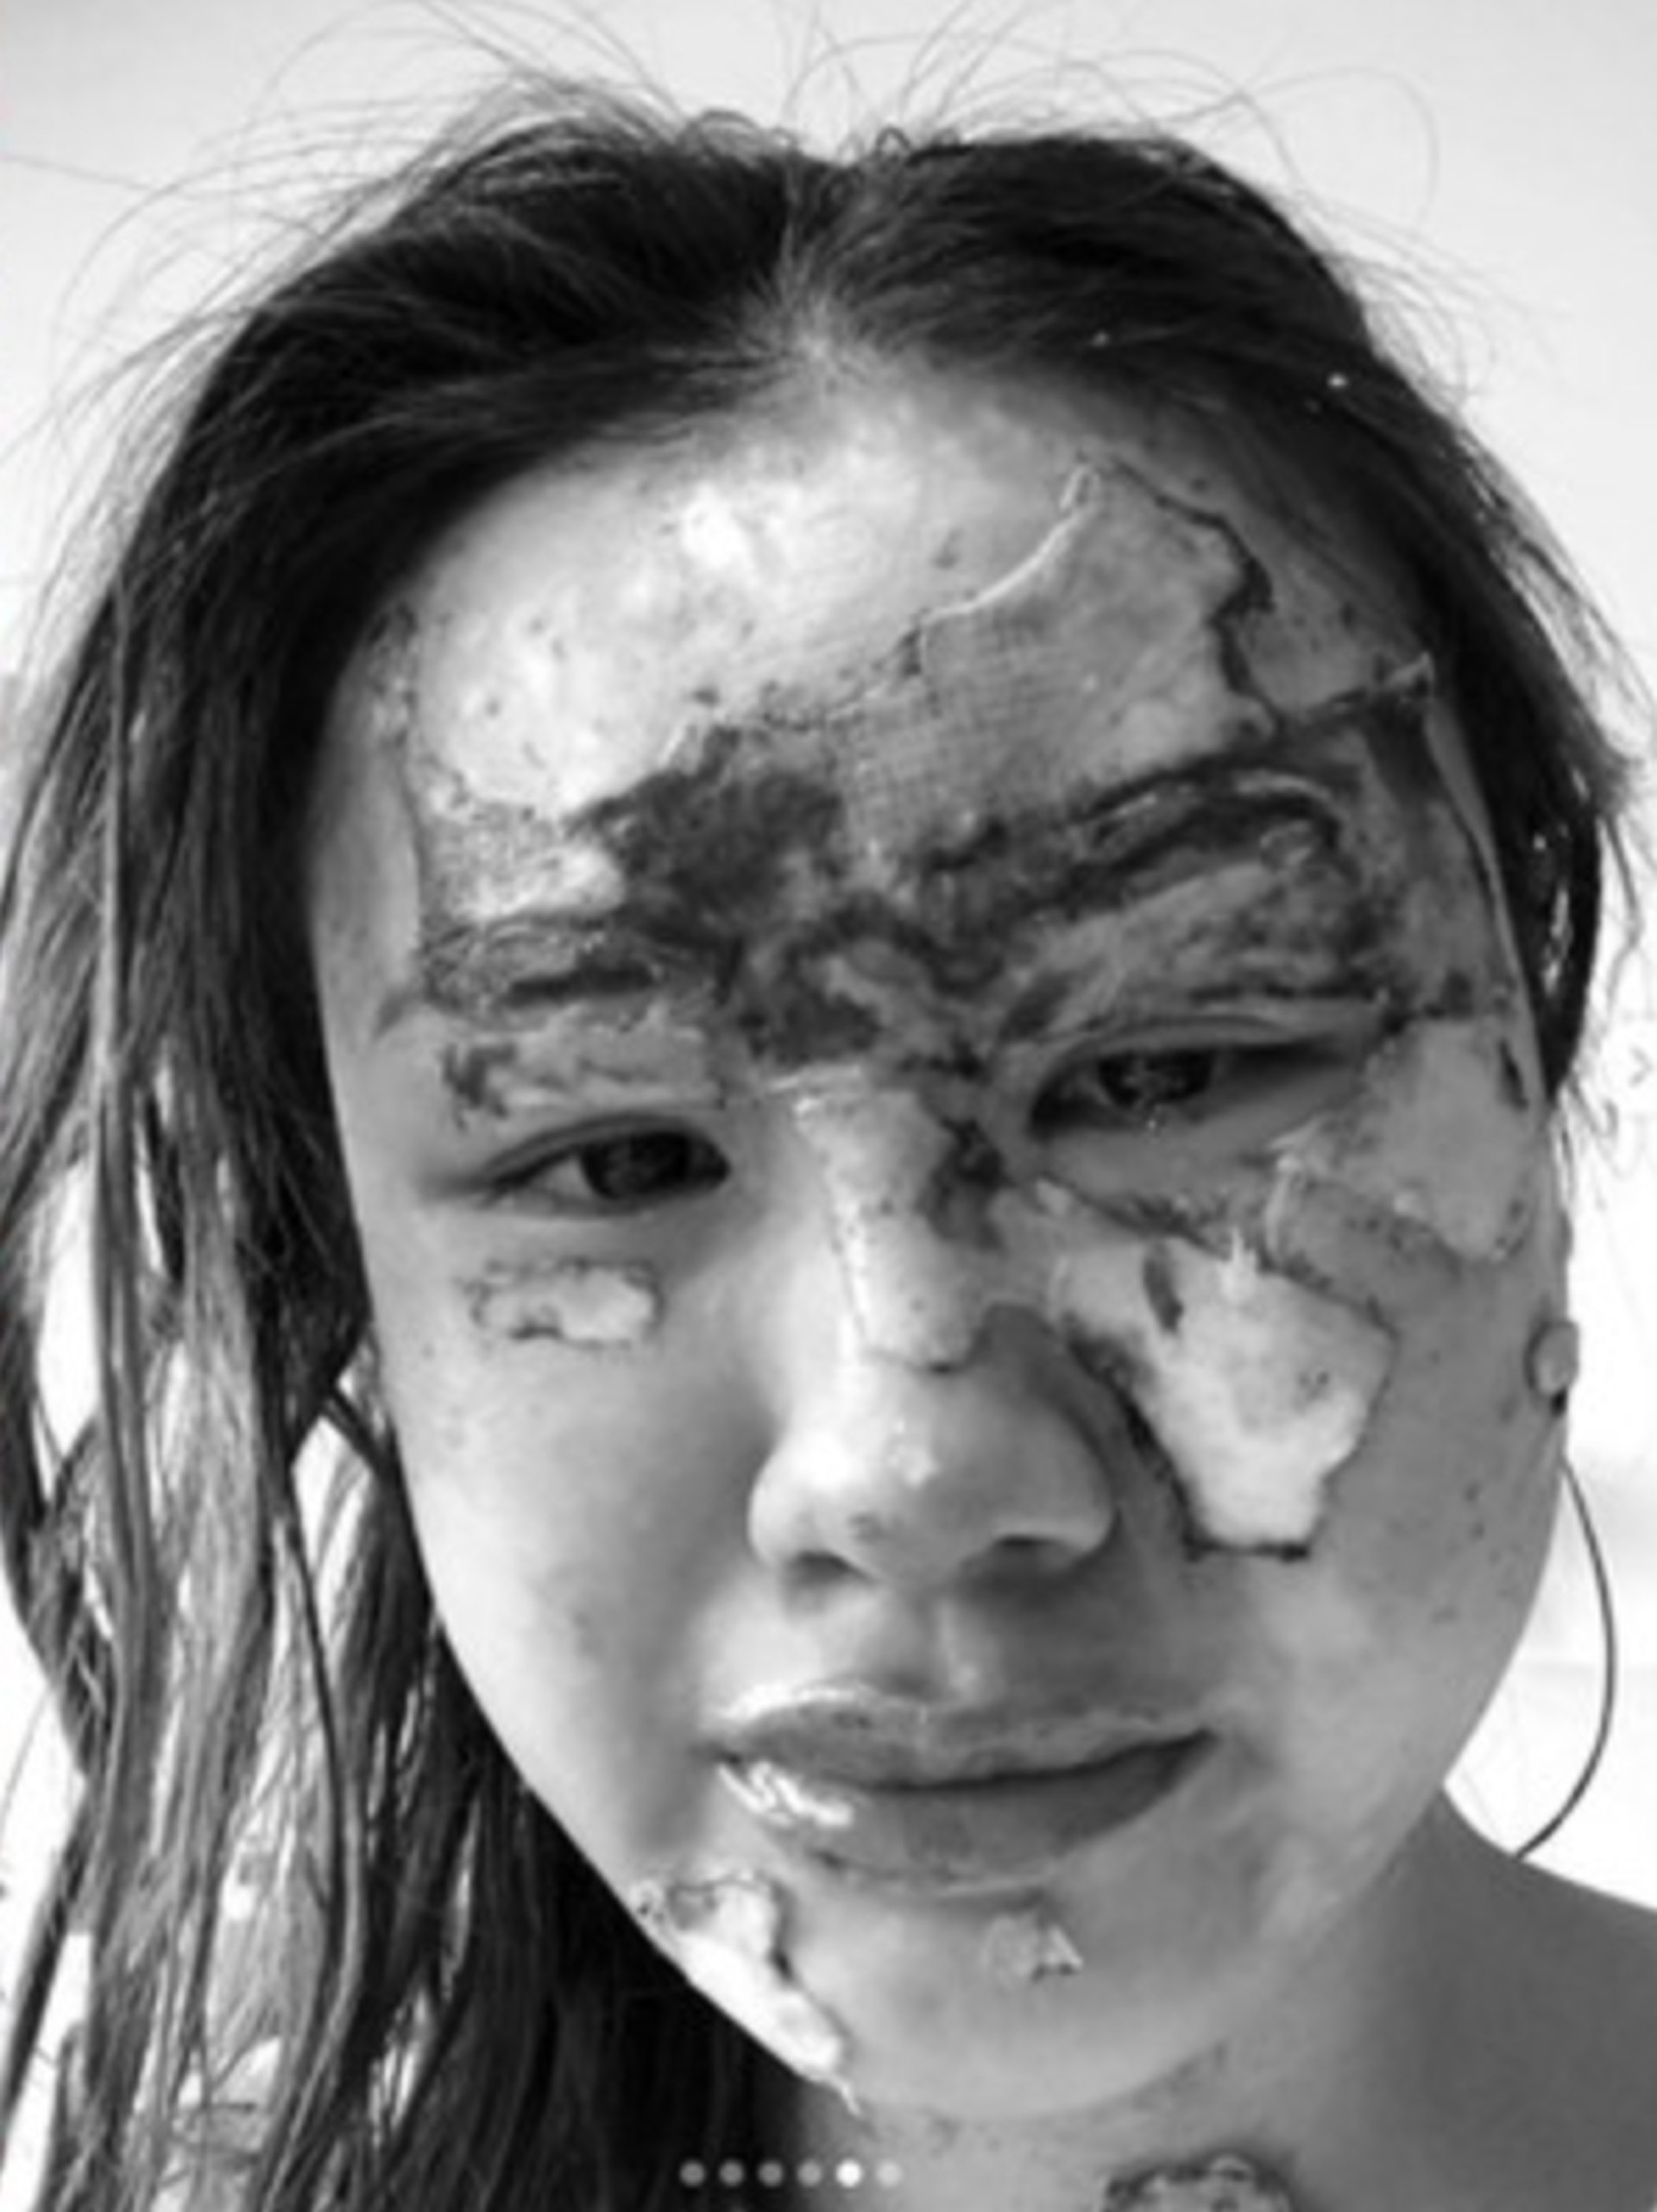 意外導致她臉部嚴重燒傷，大半張臉幾乎全毀。（IG@charlenechew）